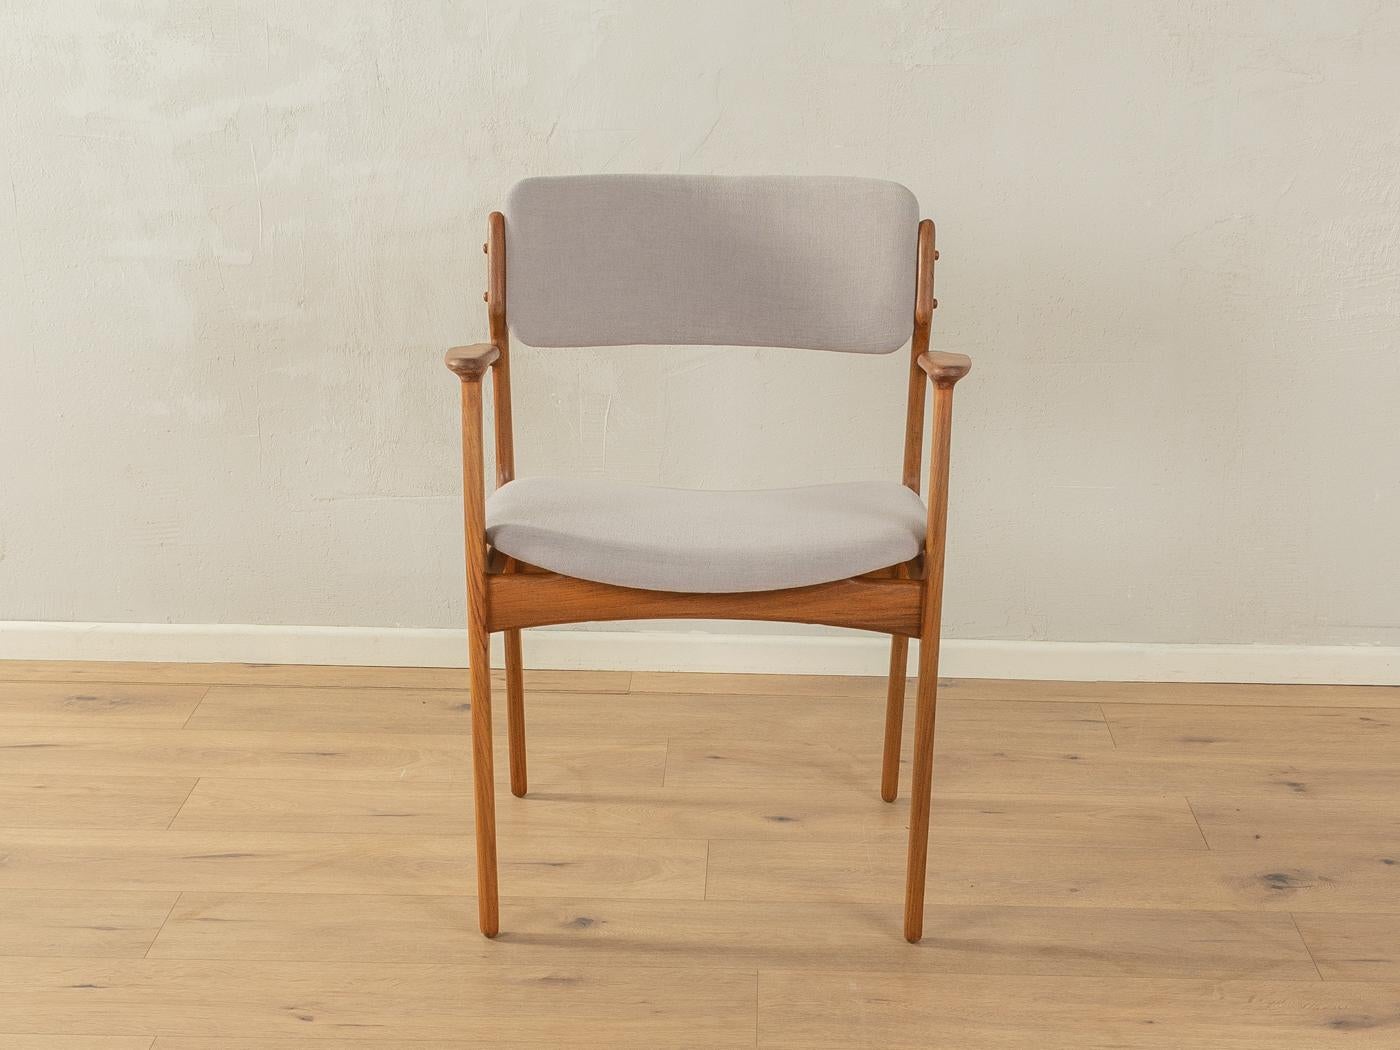 Klassischer Sessel von Erik Buch mit einem Gestell aus Teakholz. Entwurf von 1954. Der Stuhl wurde neu gepolstert und mit einem hochwertigen Stoff in Hellgrau bezogen.

Qualitätsmerkmale:
    vollendetes Design: perfekte Proportionen und sichtbare